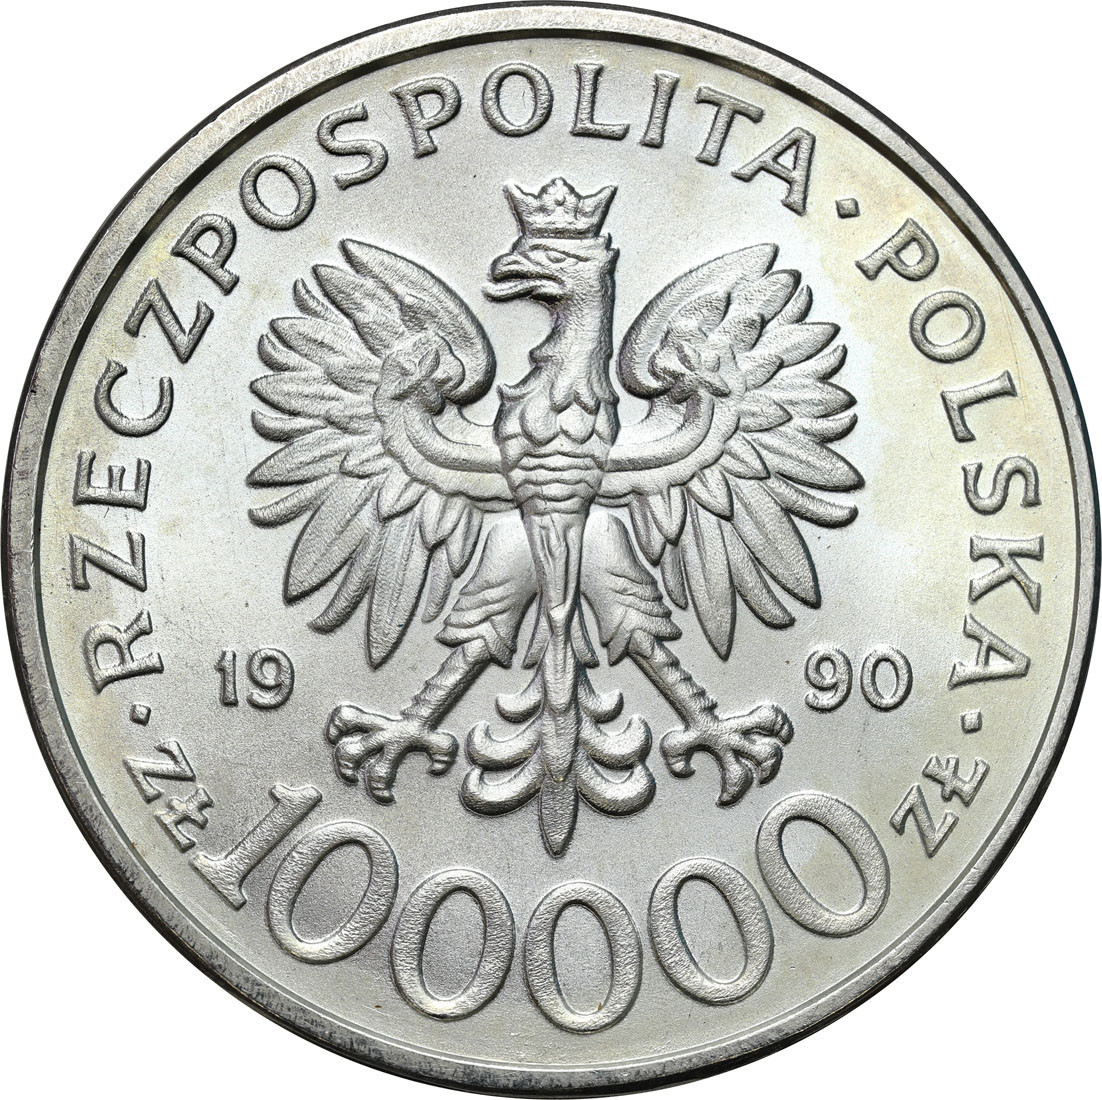 III RP. 100 000 złotych 1990 Solidarność typ C – RZADKIE